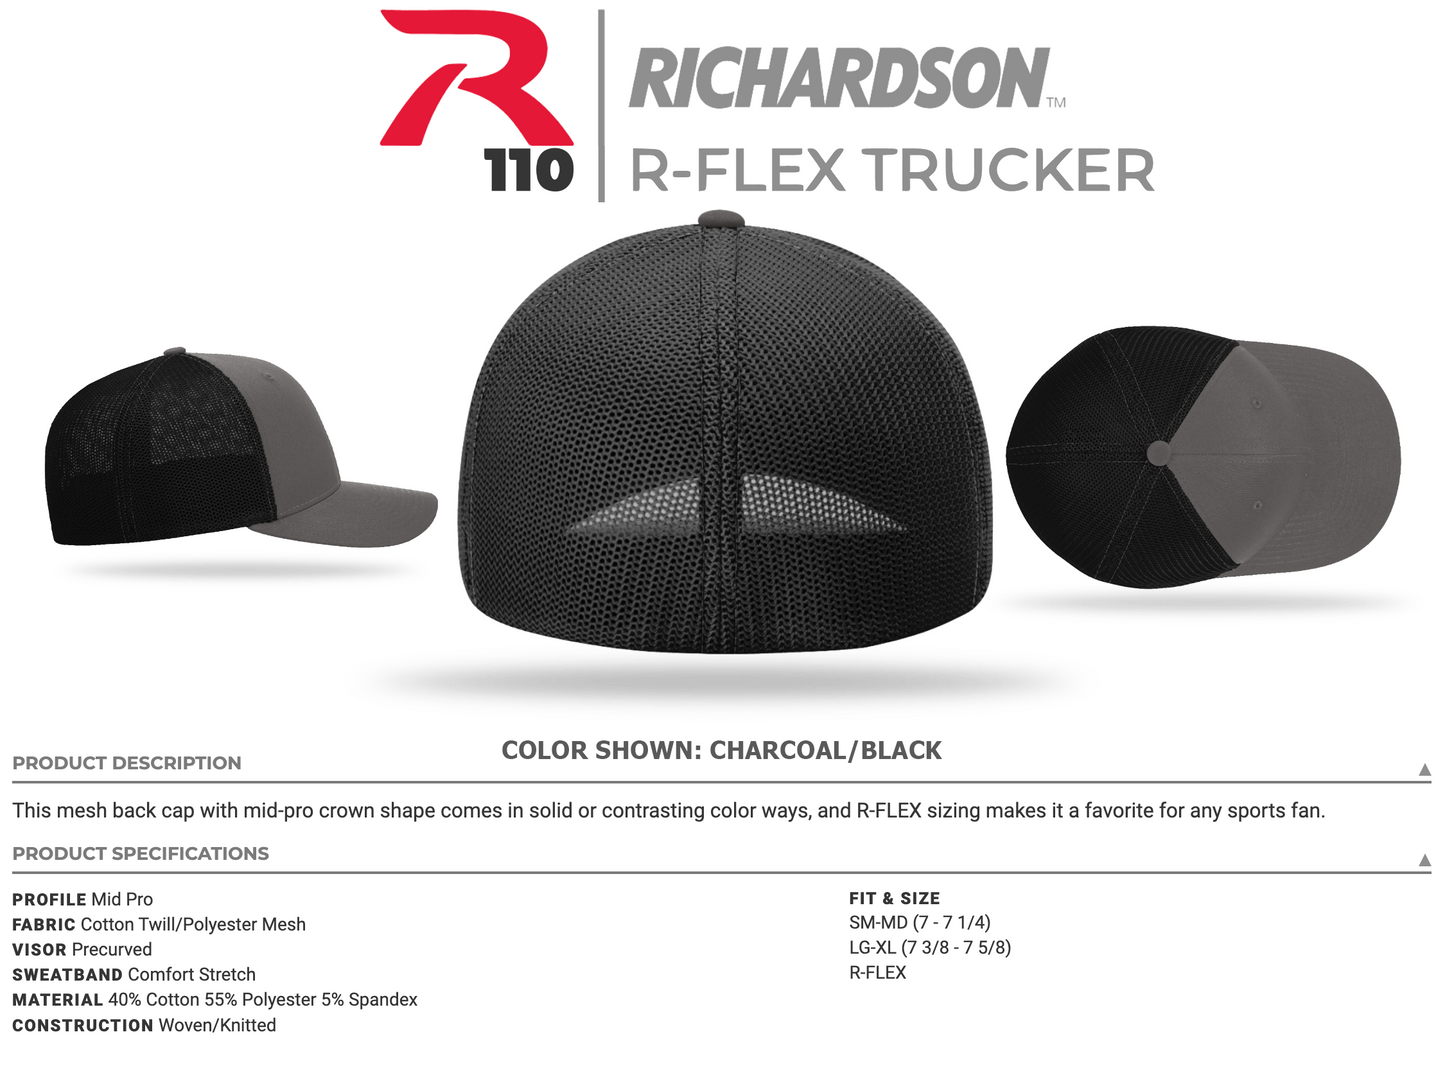 Faith Is Essential R-FLEX Richardson 110 Stretch Hat